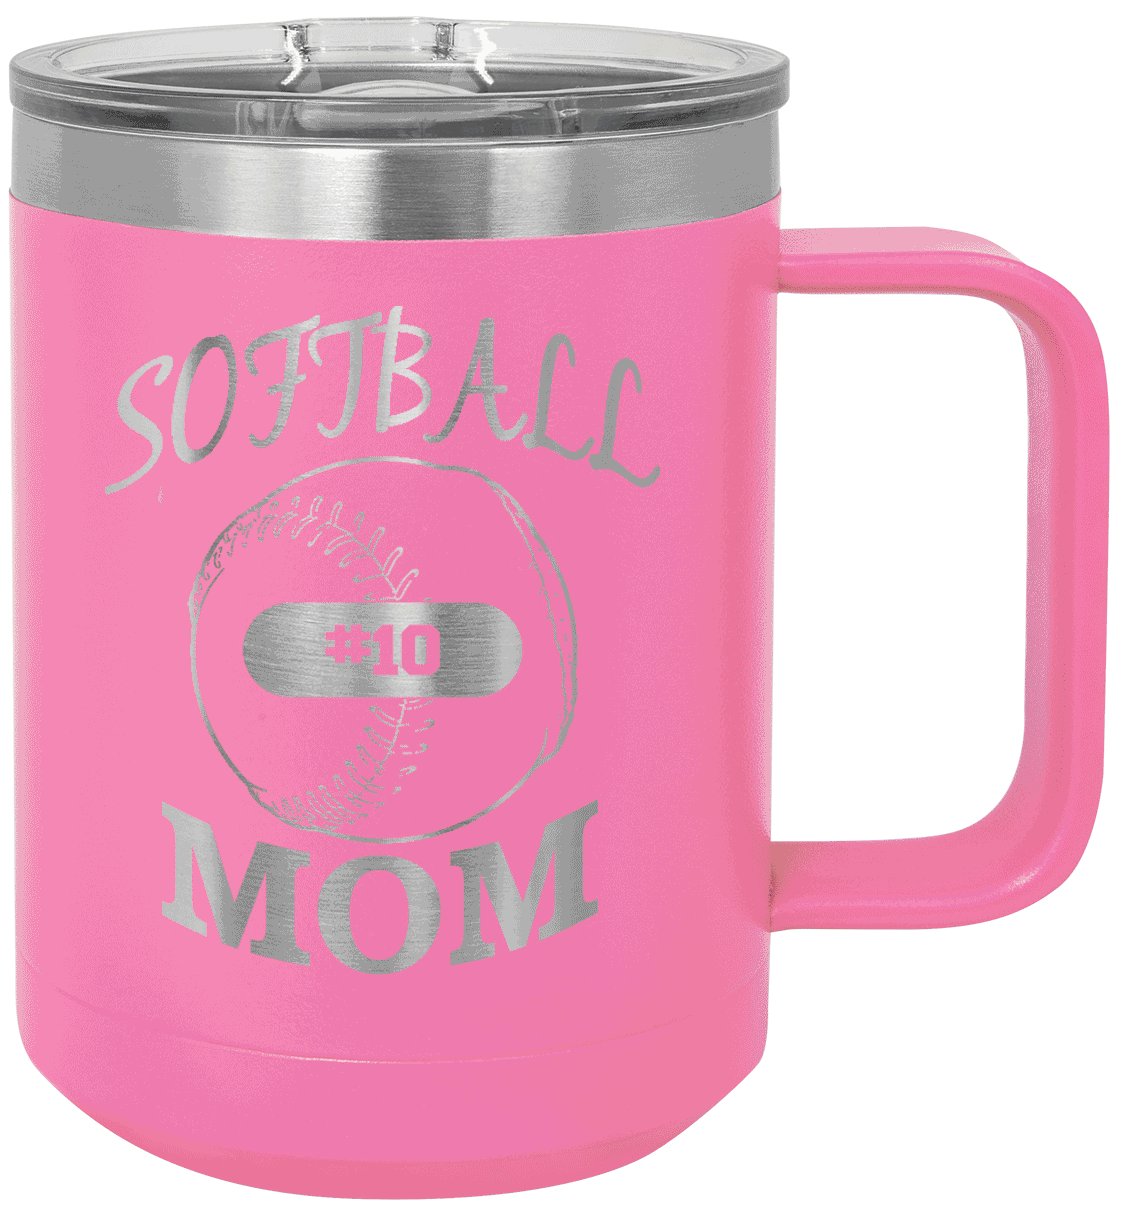 Softball Coffee Mug